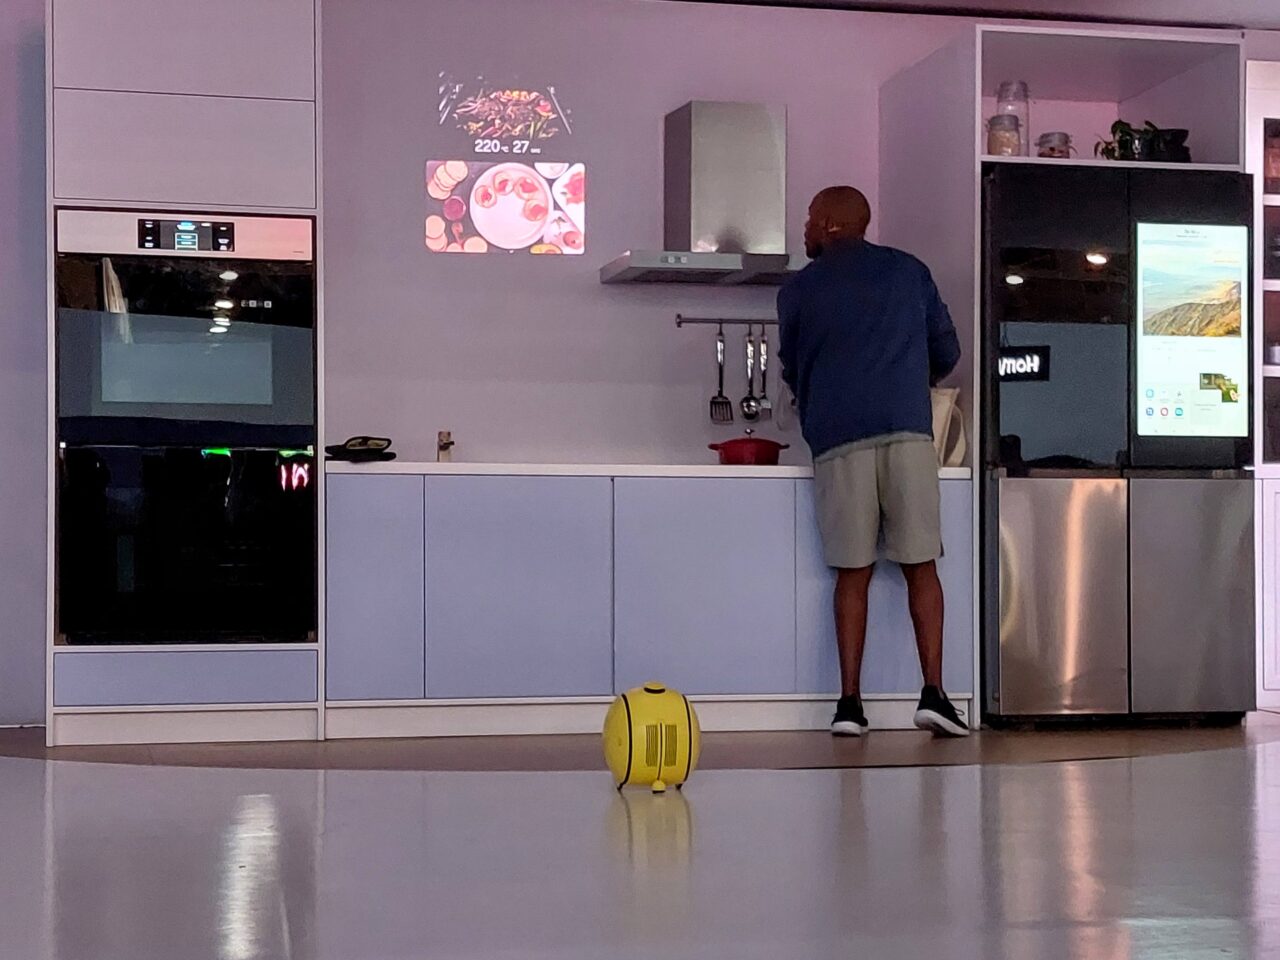 Mężczyzna stoi przy blacie kuchennym; nowoczesne szafki i lodówka z ekranem; na podłodze żółty robot Samsung Ballie.